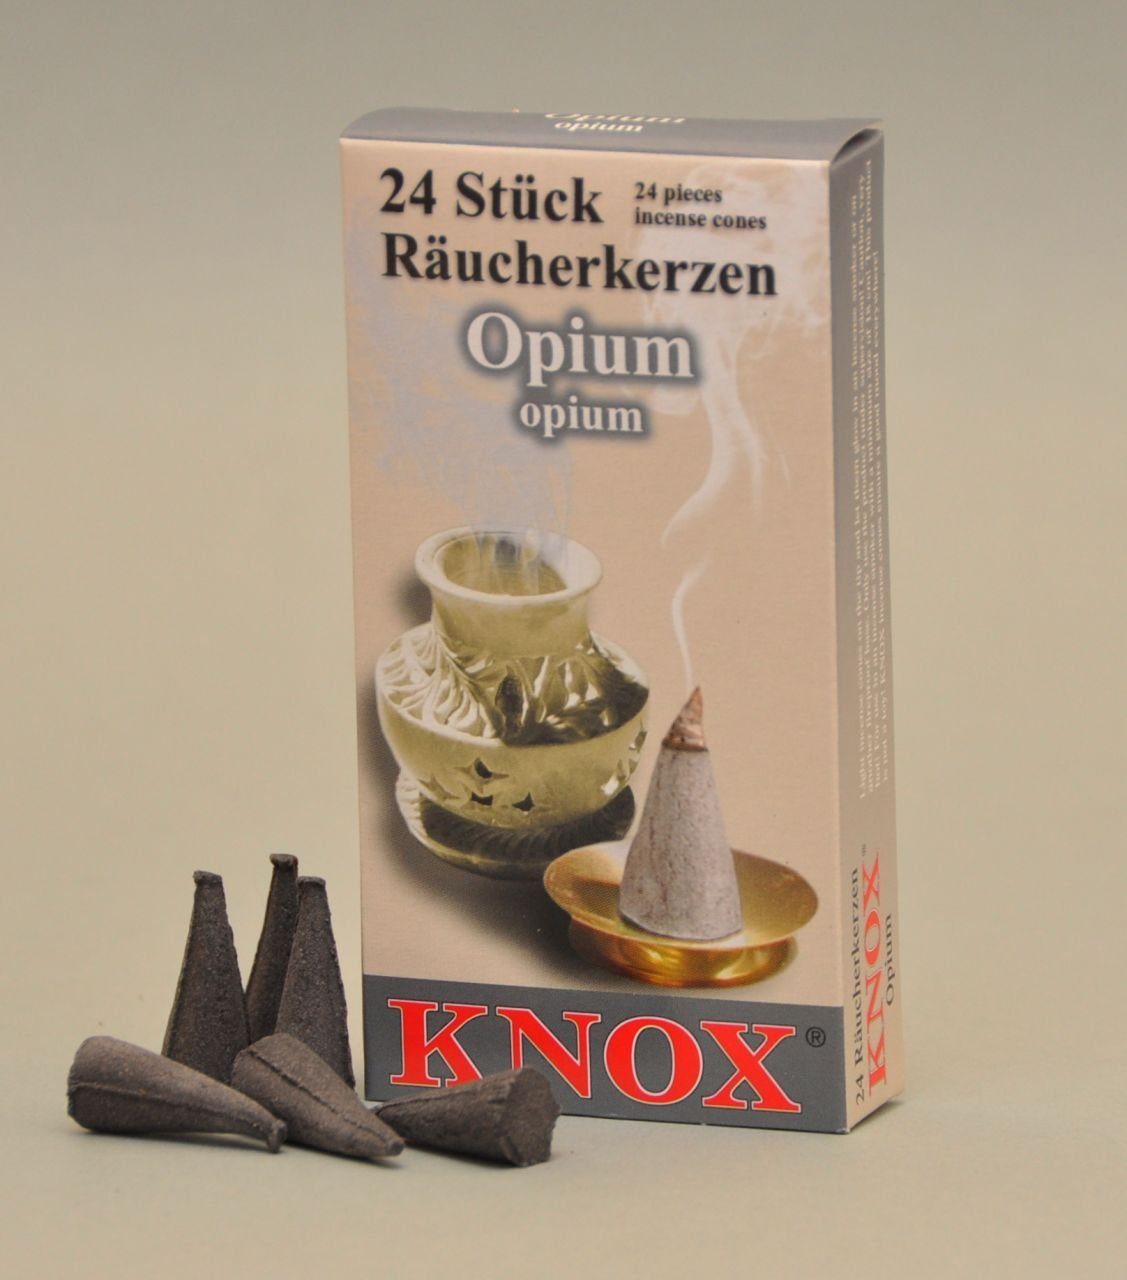 Knox - Opium KNOX Stück Räucherkerzen Räucherhaus 24